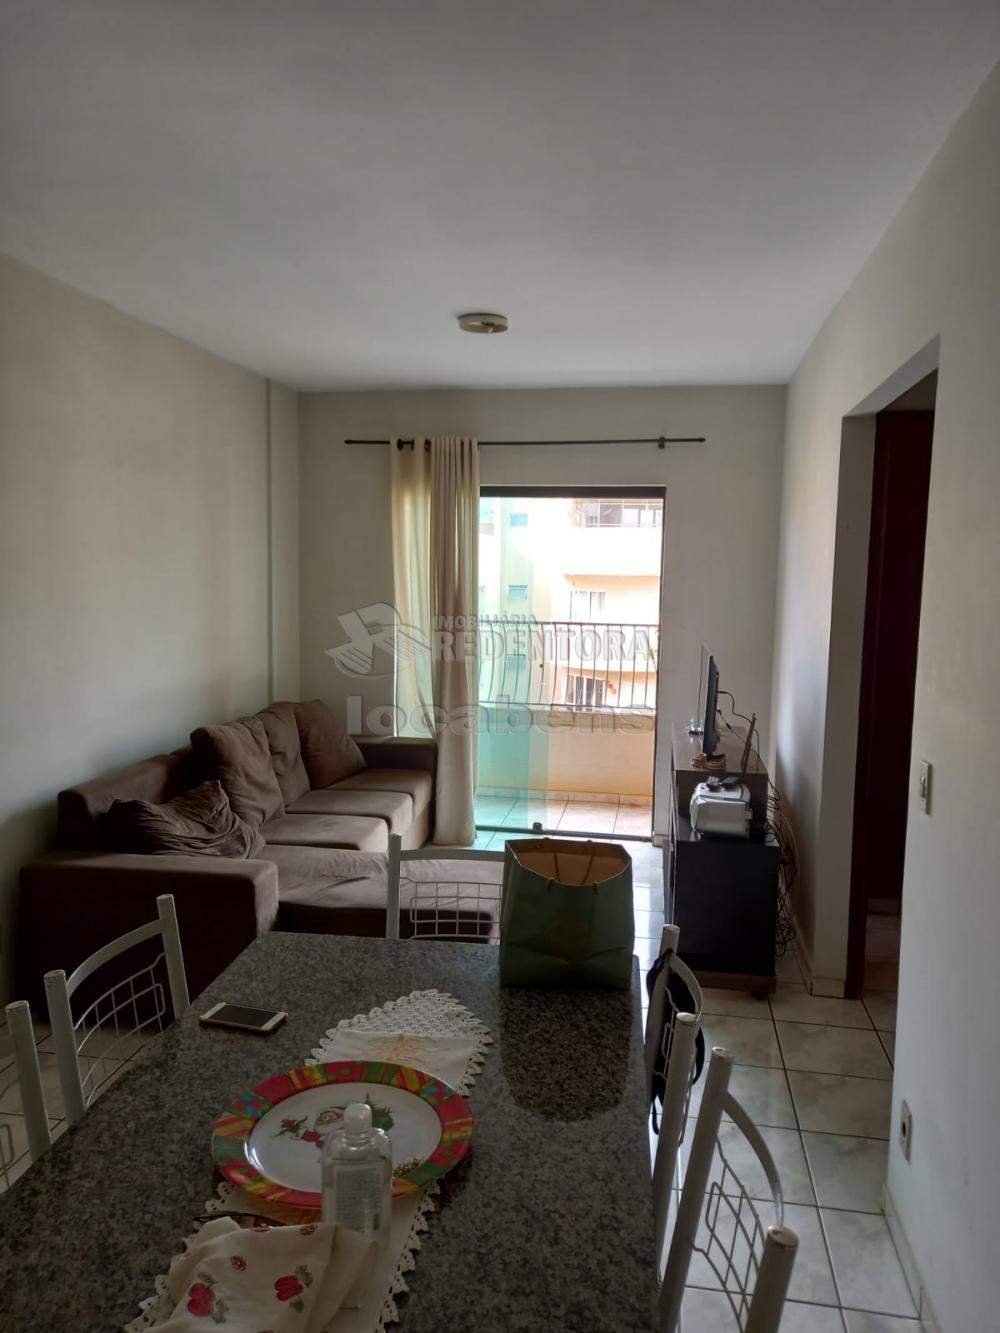 Comprar Apartamento / Padrão em São José do Rio Preto apenas R$ 195.000,00 - Foto 7